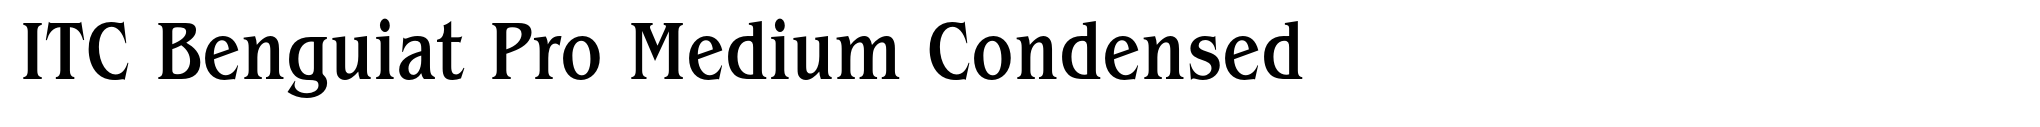 ITC Benguiat Pro Medium Condensed image